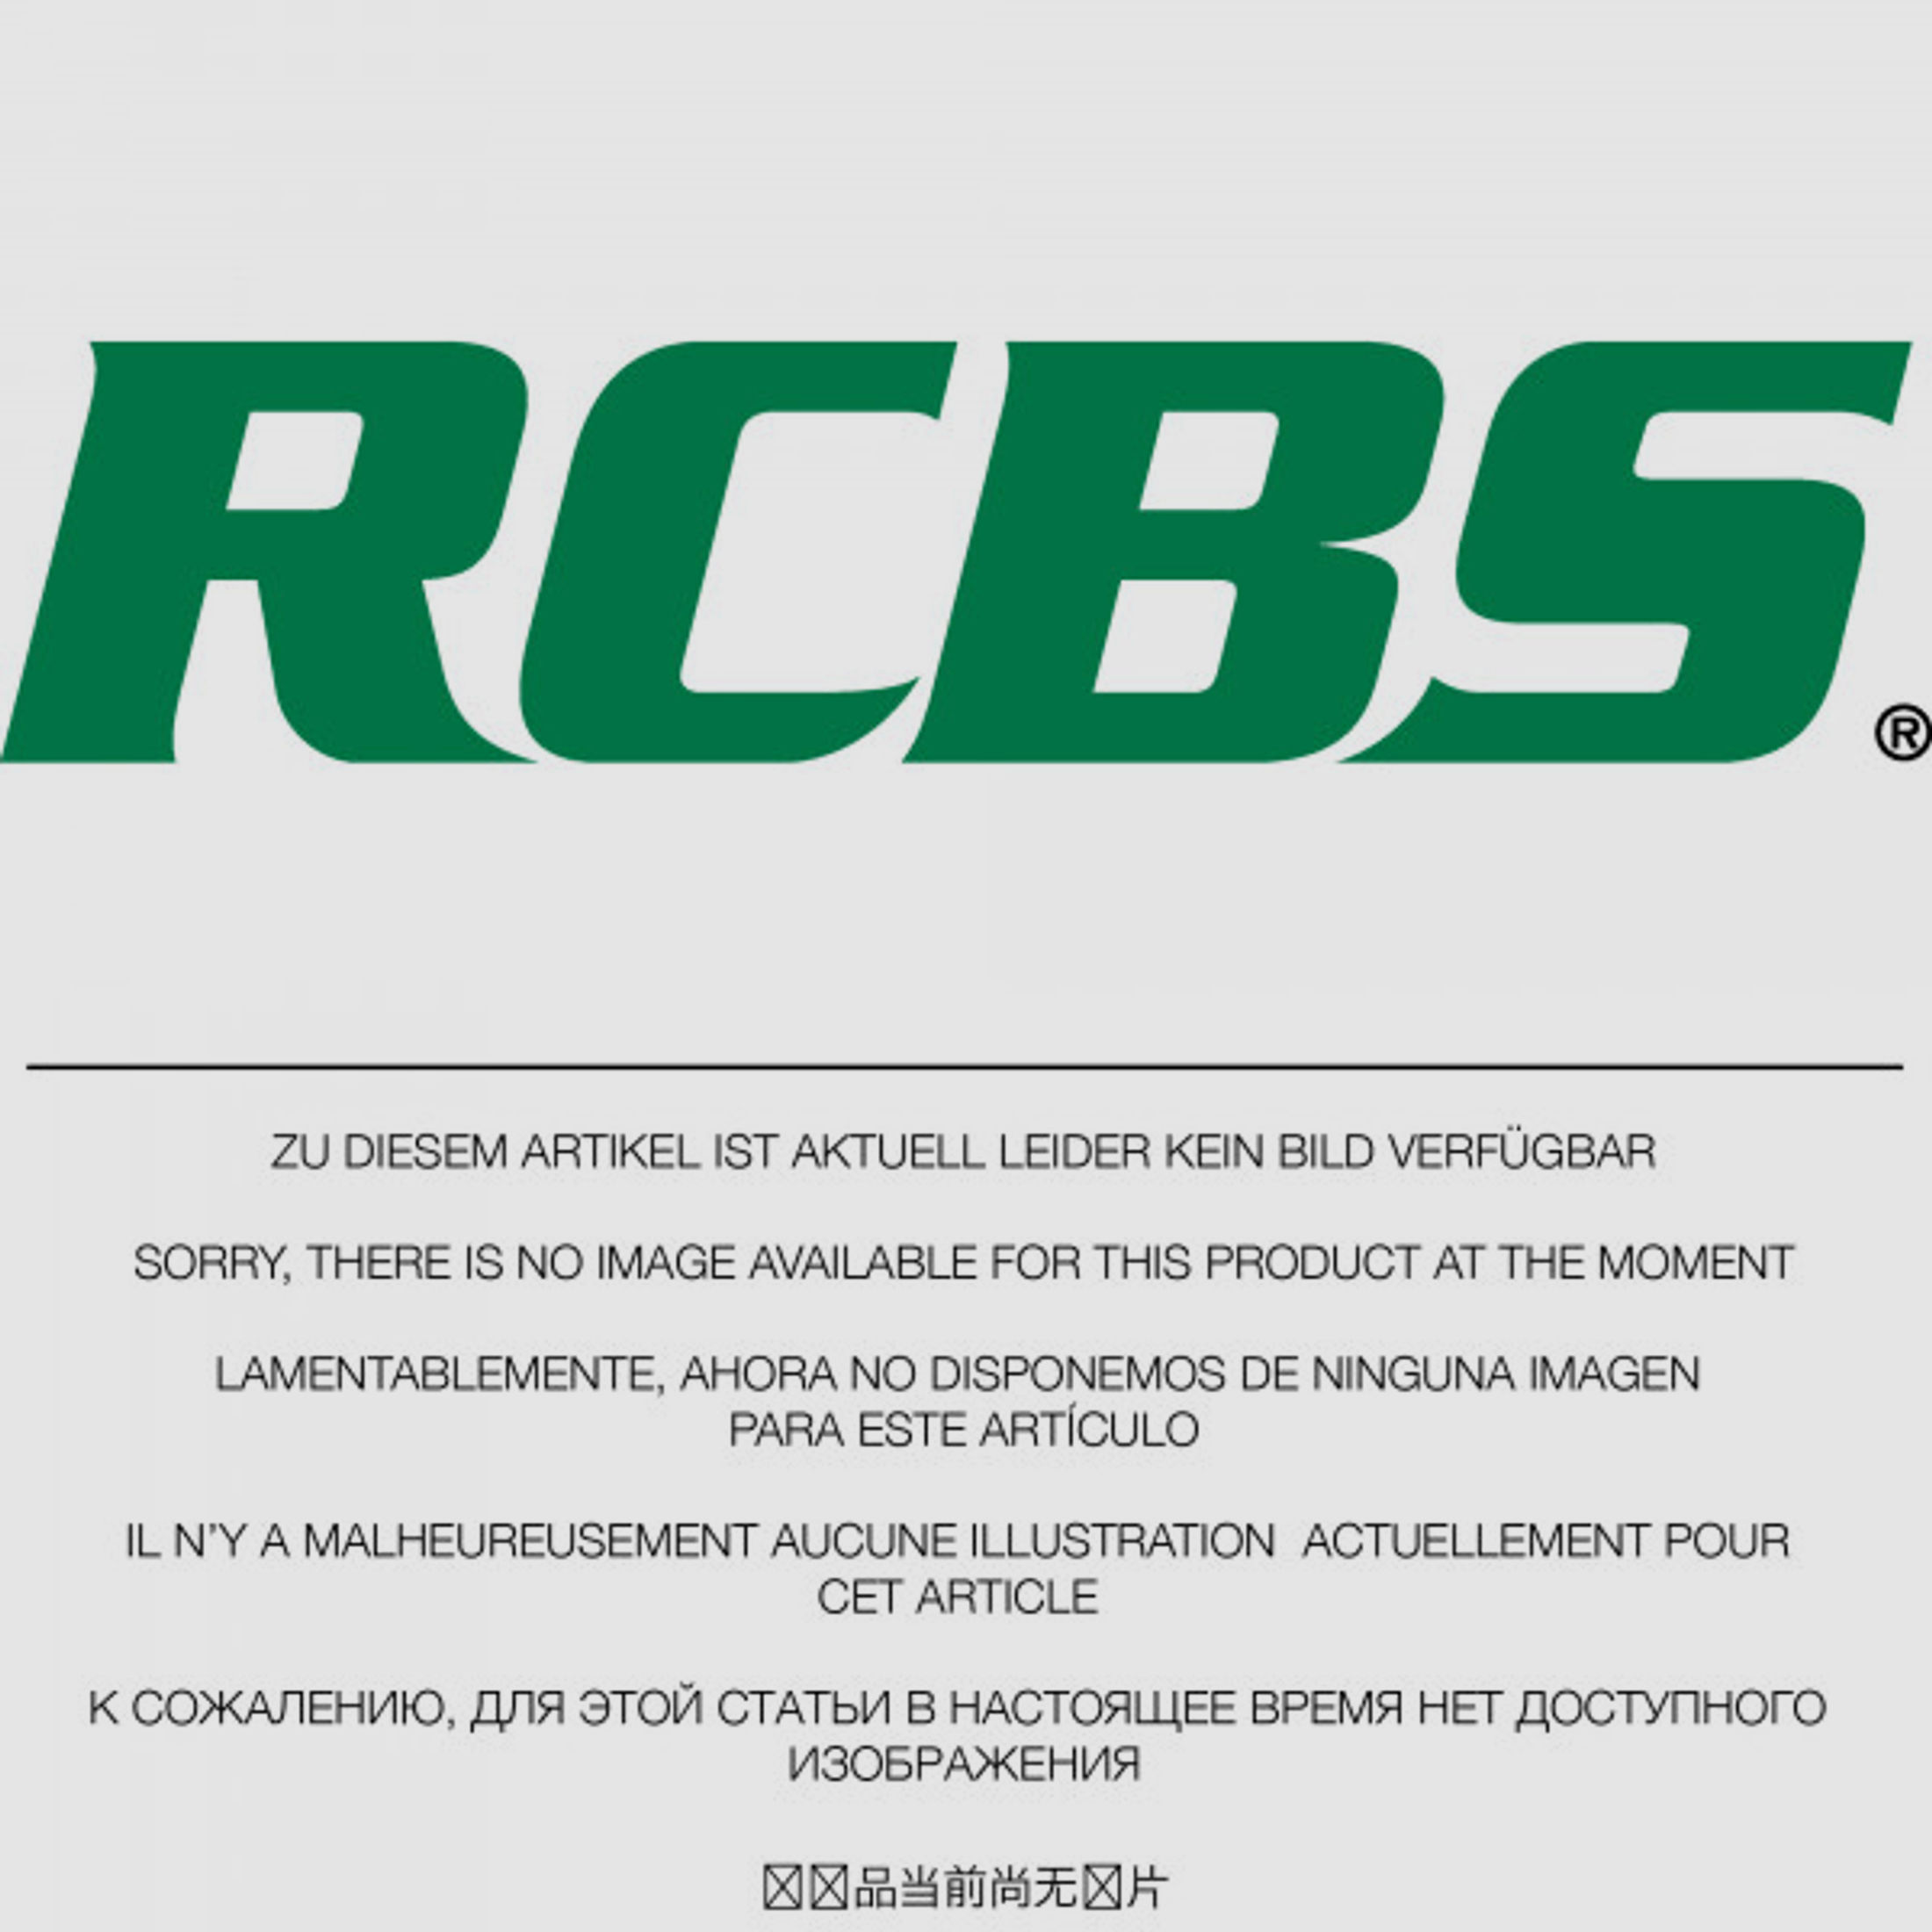 RCBS Lube-A-Matic Top Punch Geschoss Setzstempel Nr. 374 #82519